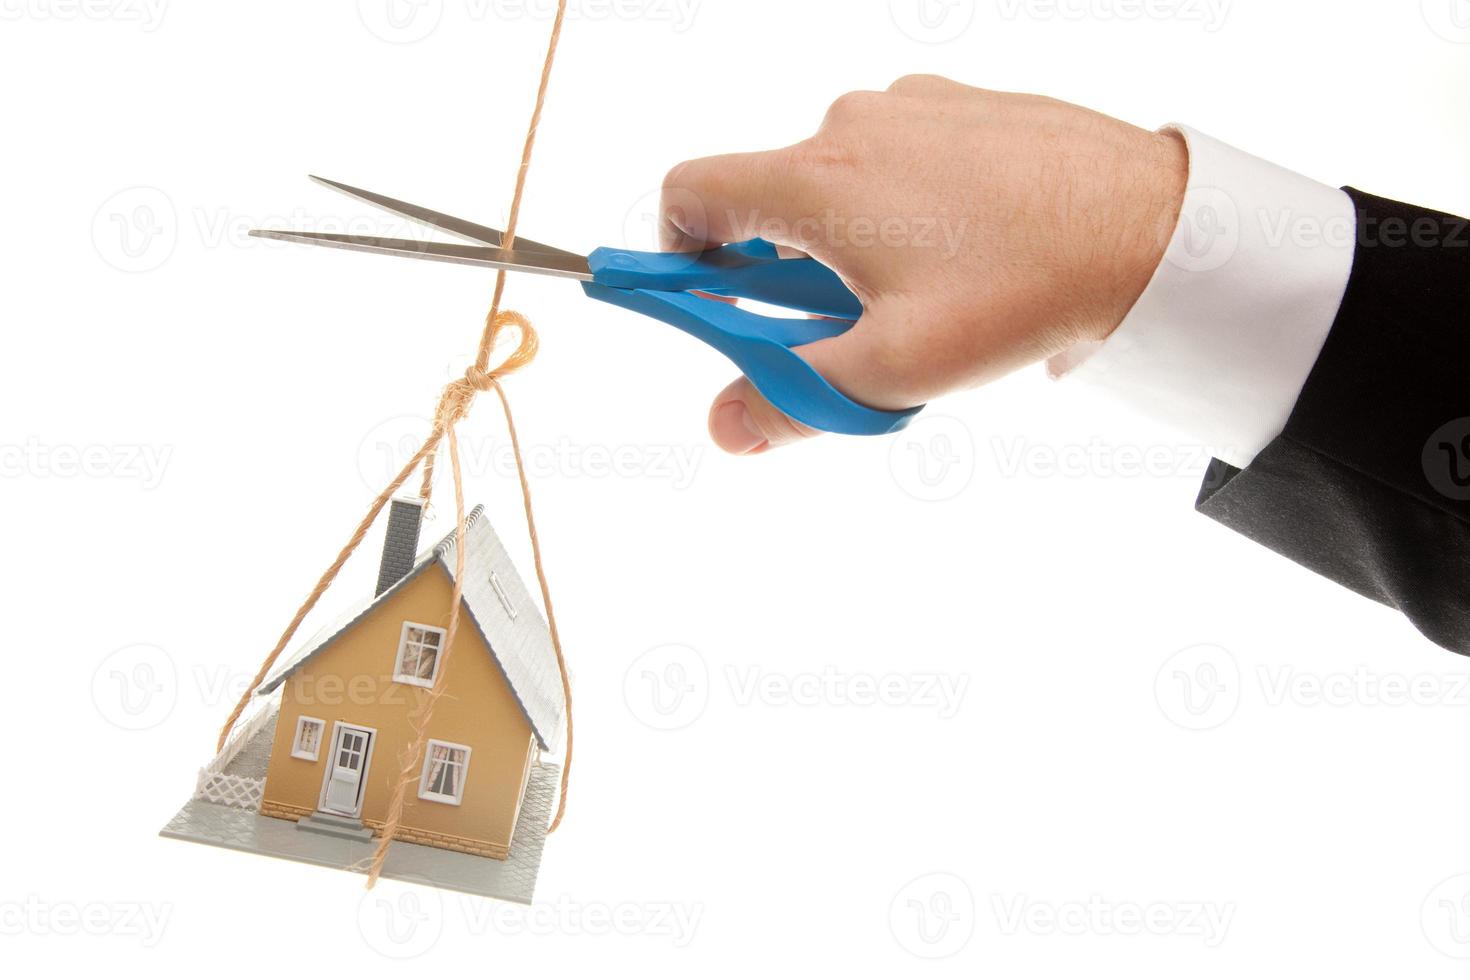 mano con tijeras cortando cuerda sosteniendo casa foto